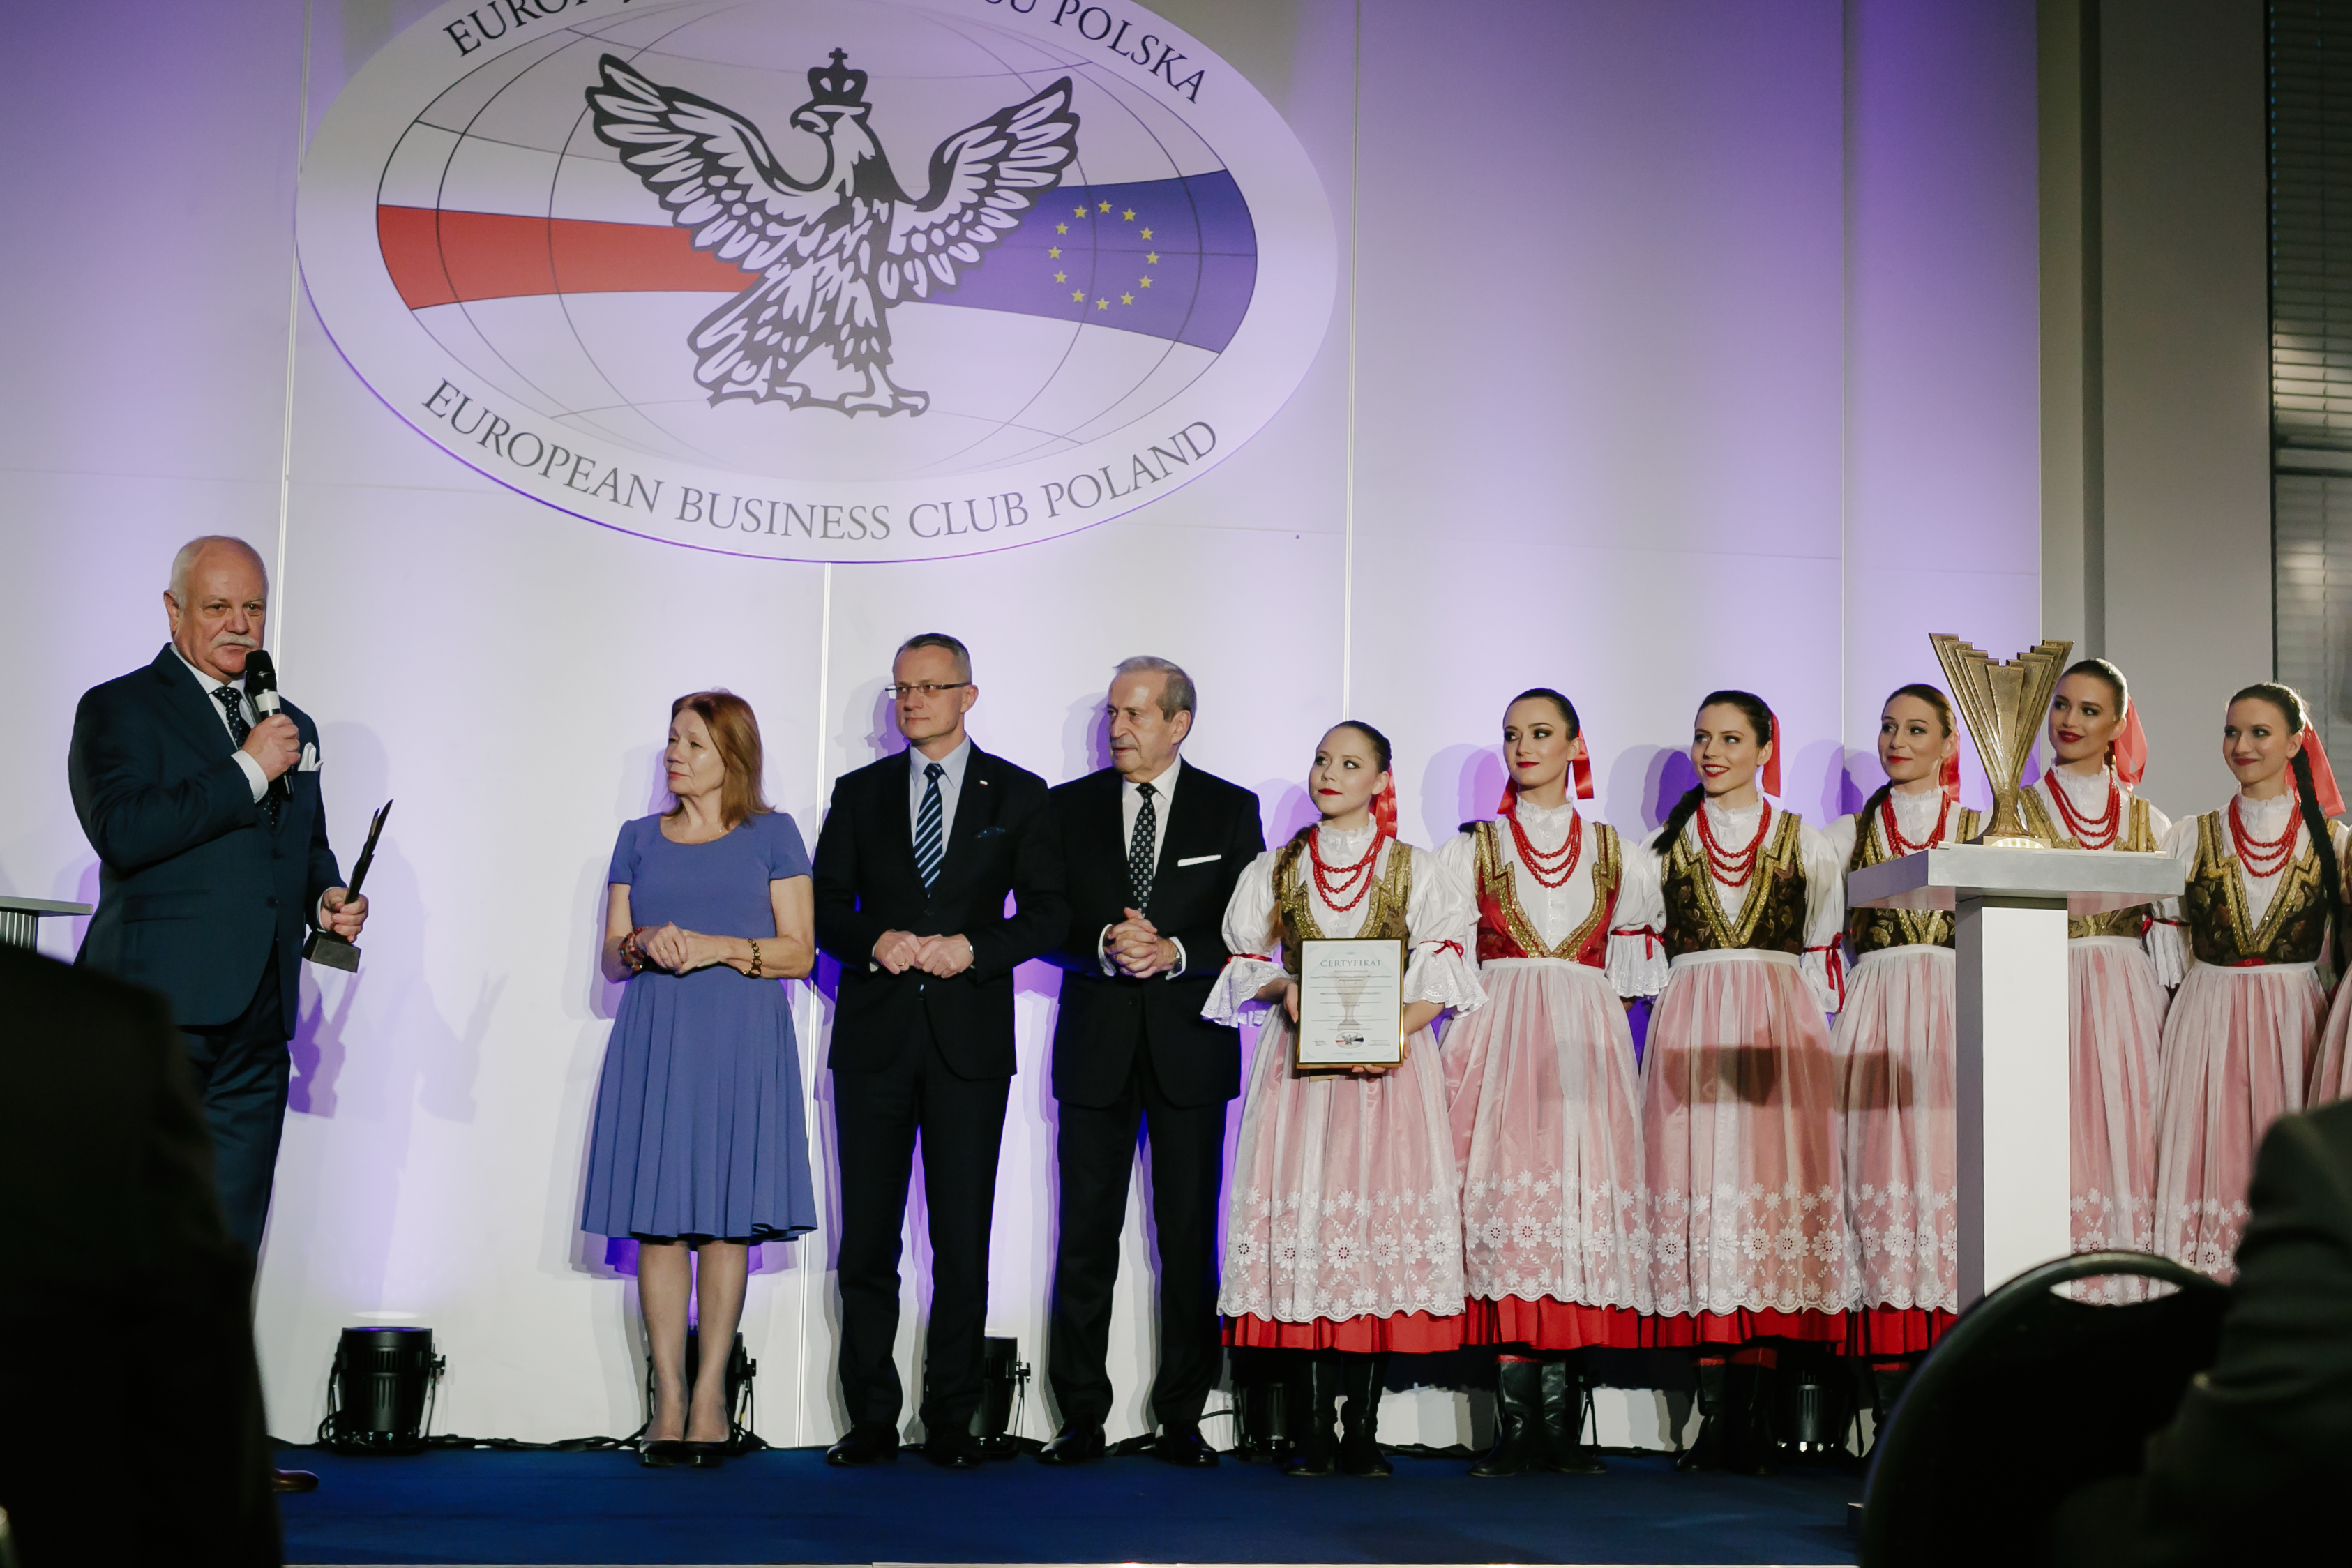 Warszawianka nagrodzona przez Europejski Klub Biznesu Polska